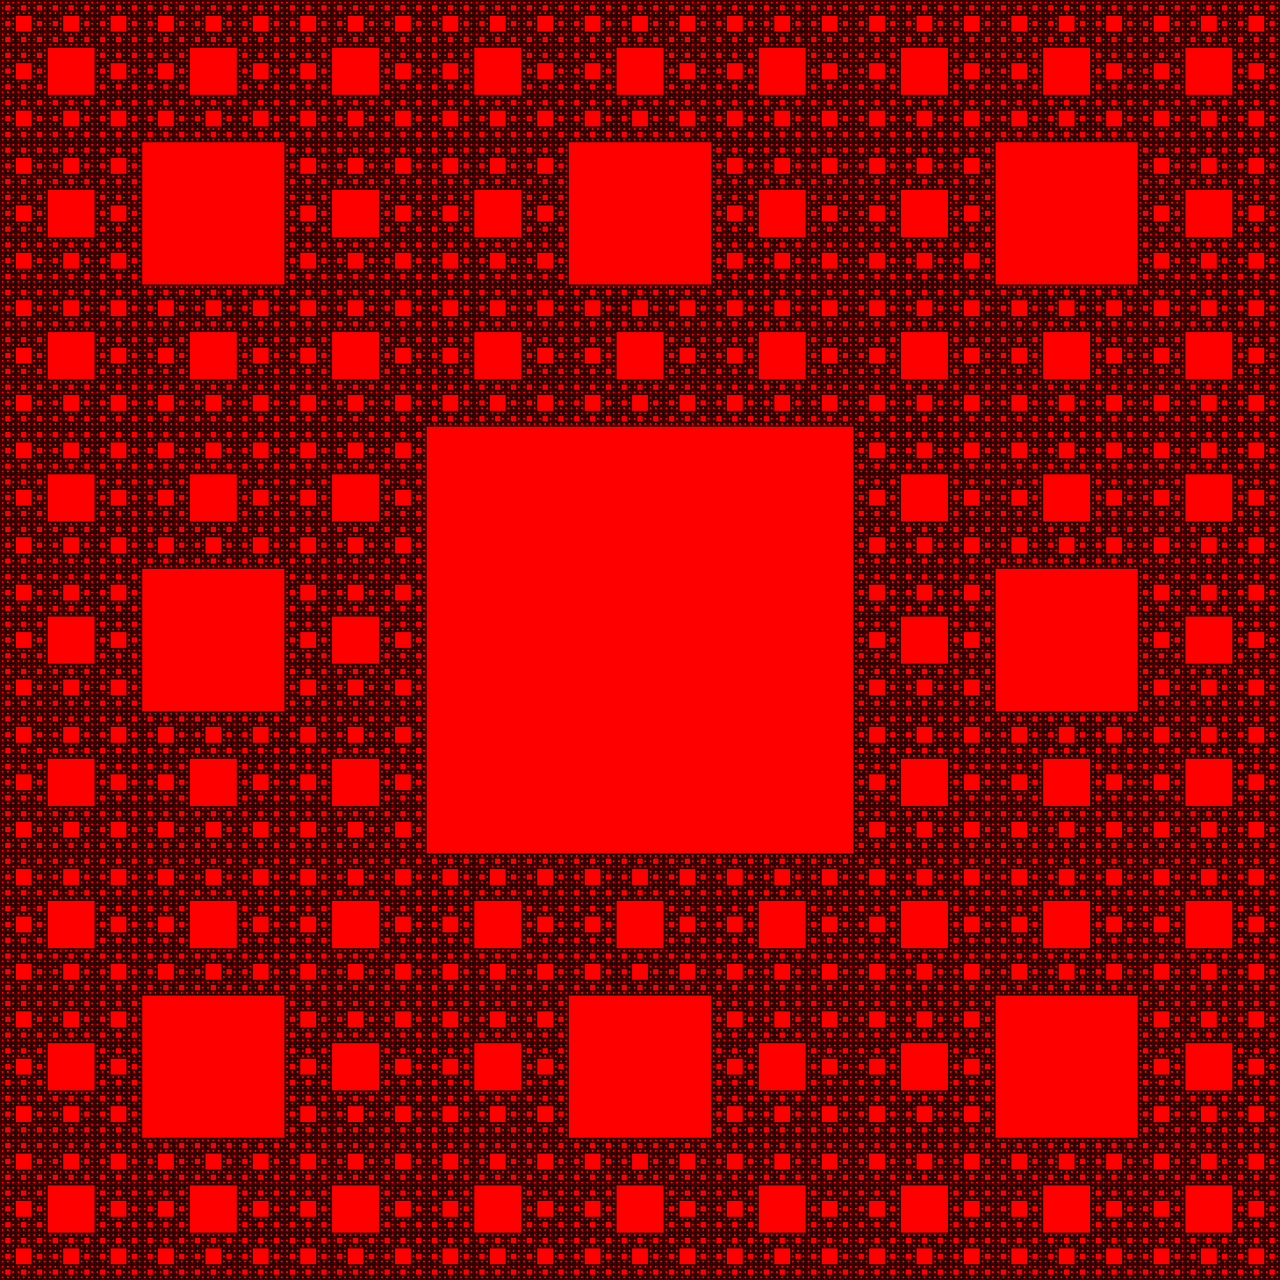 sierpinski carpet plane fractal shape free photo